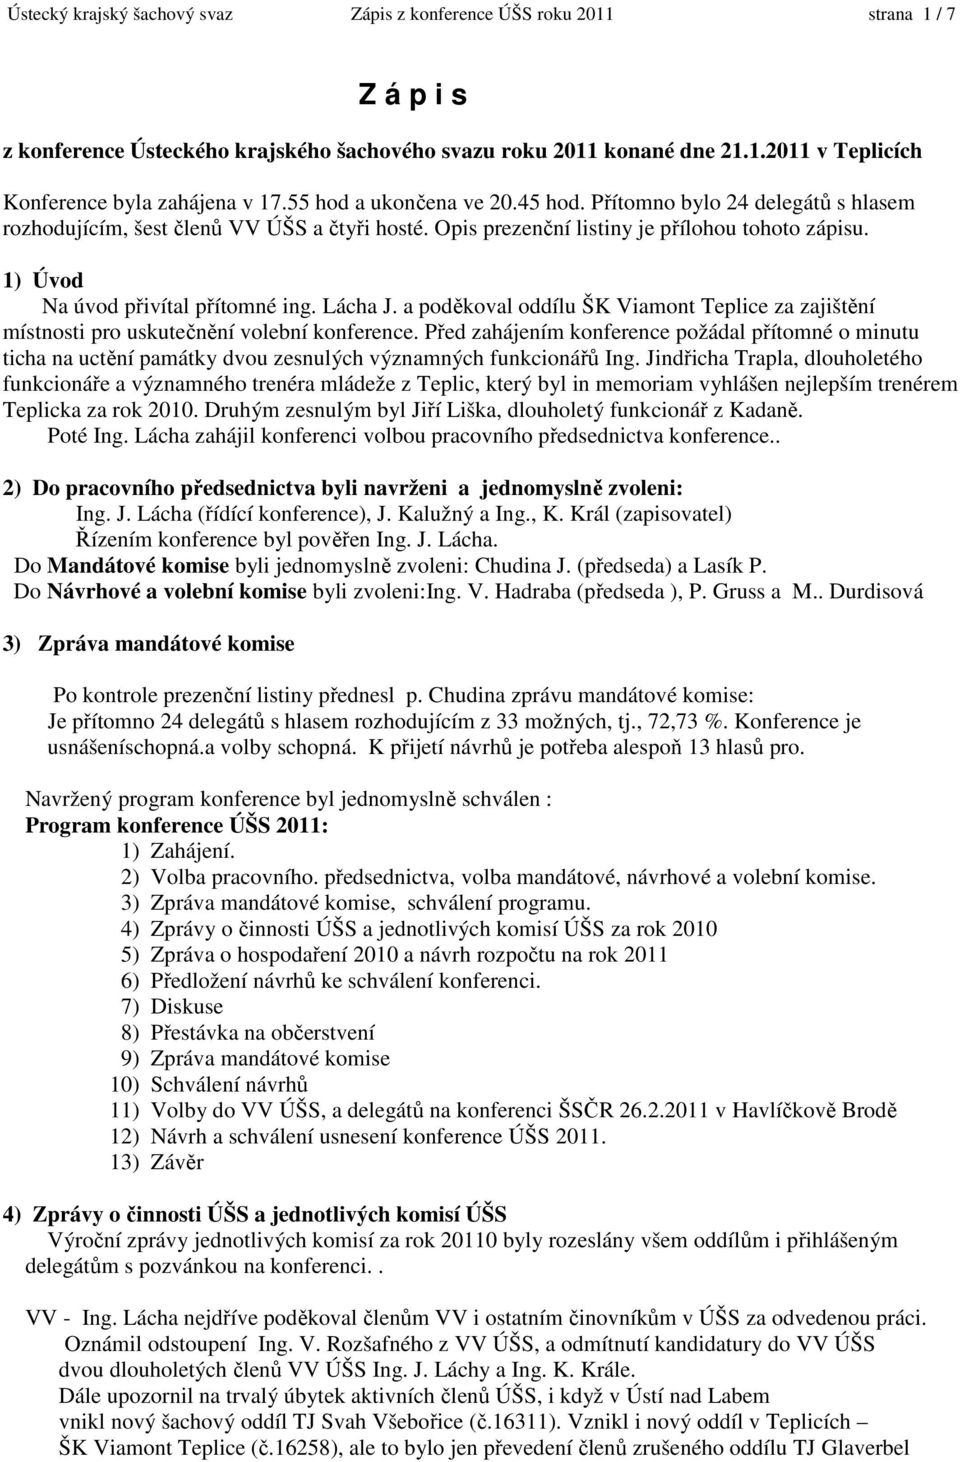 Ústecký krajský šachový svaz Zápis z konference ÚŠS roku 2011 strana 1 / 7  - PDF Free Download